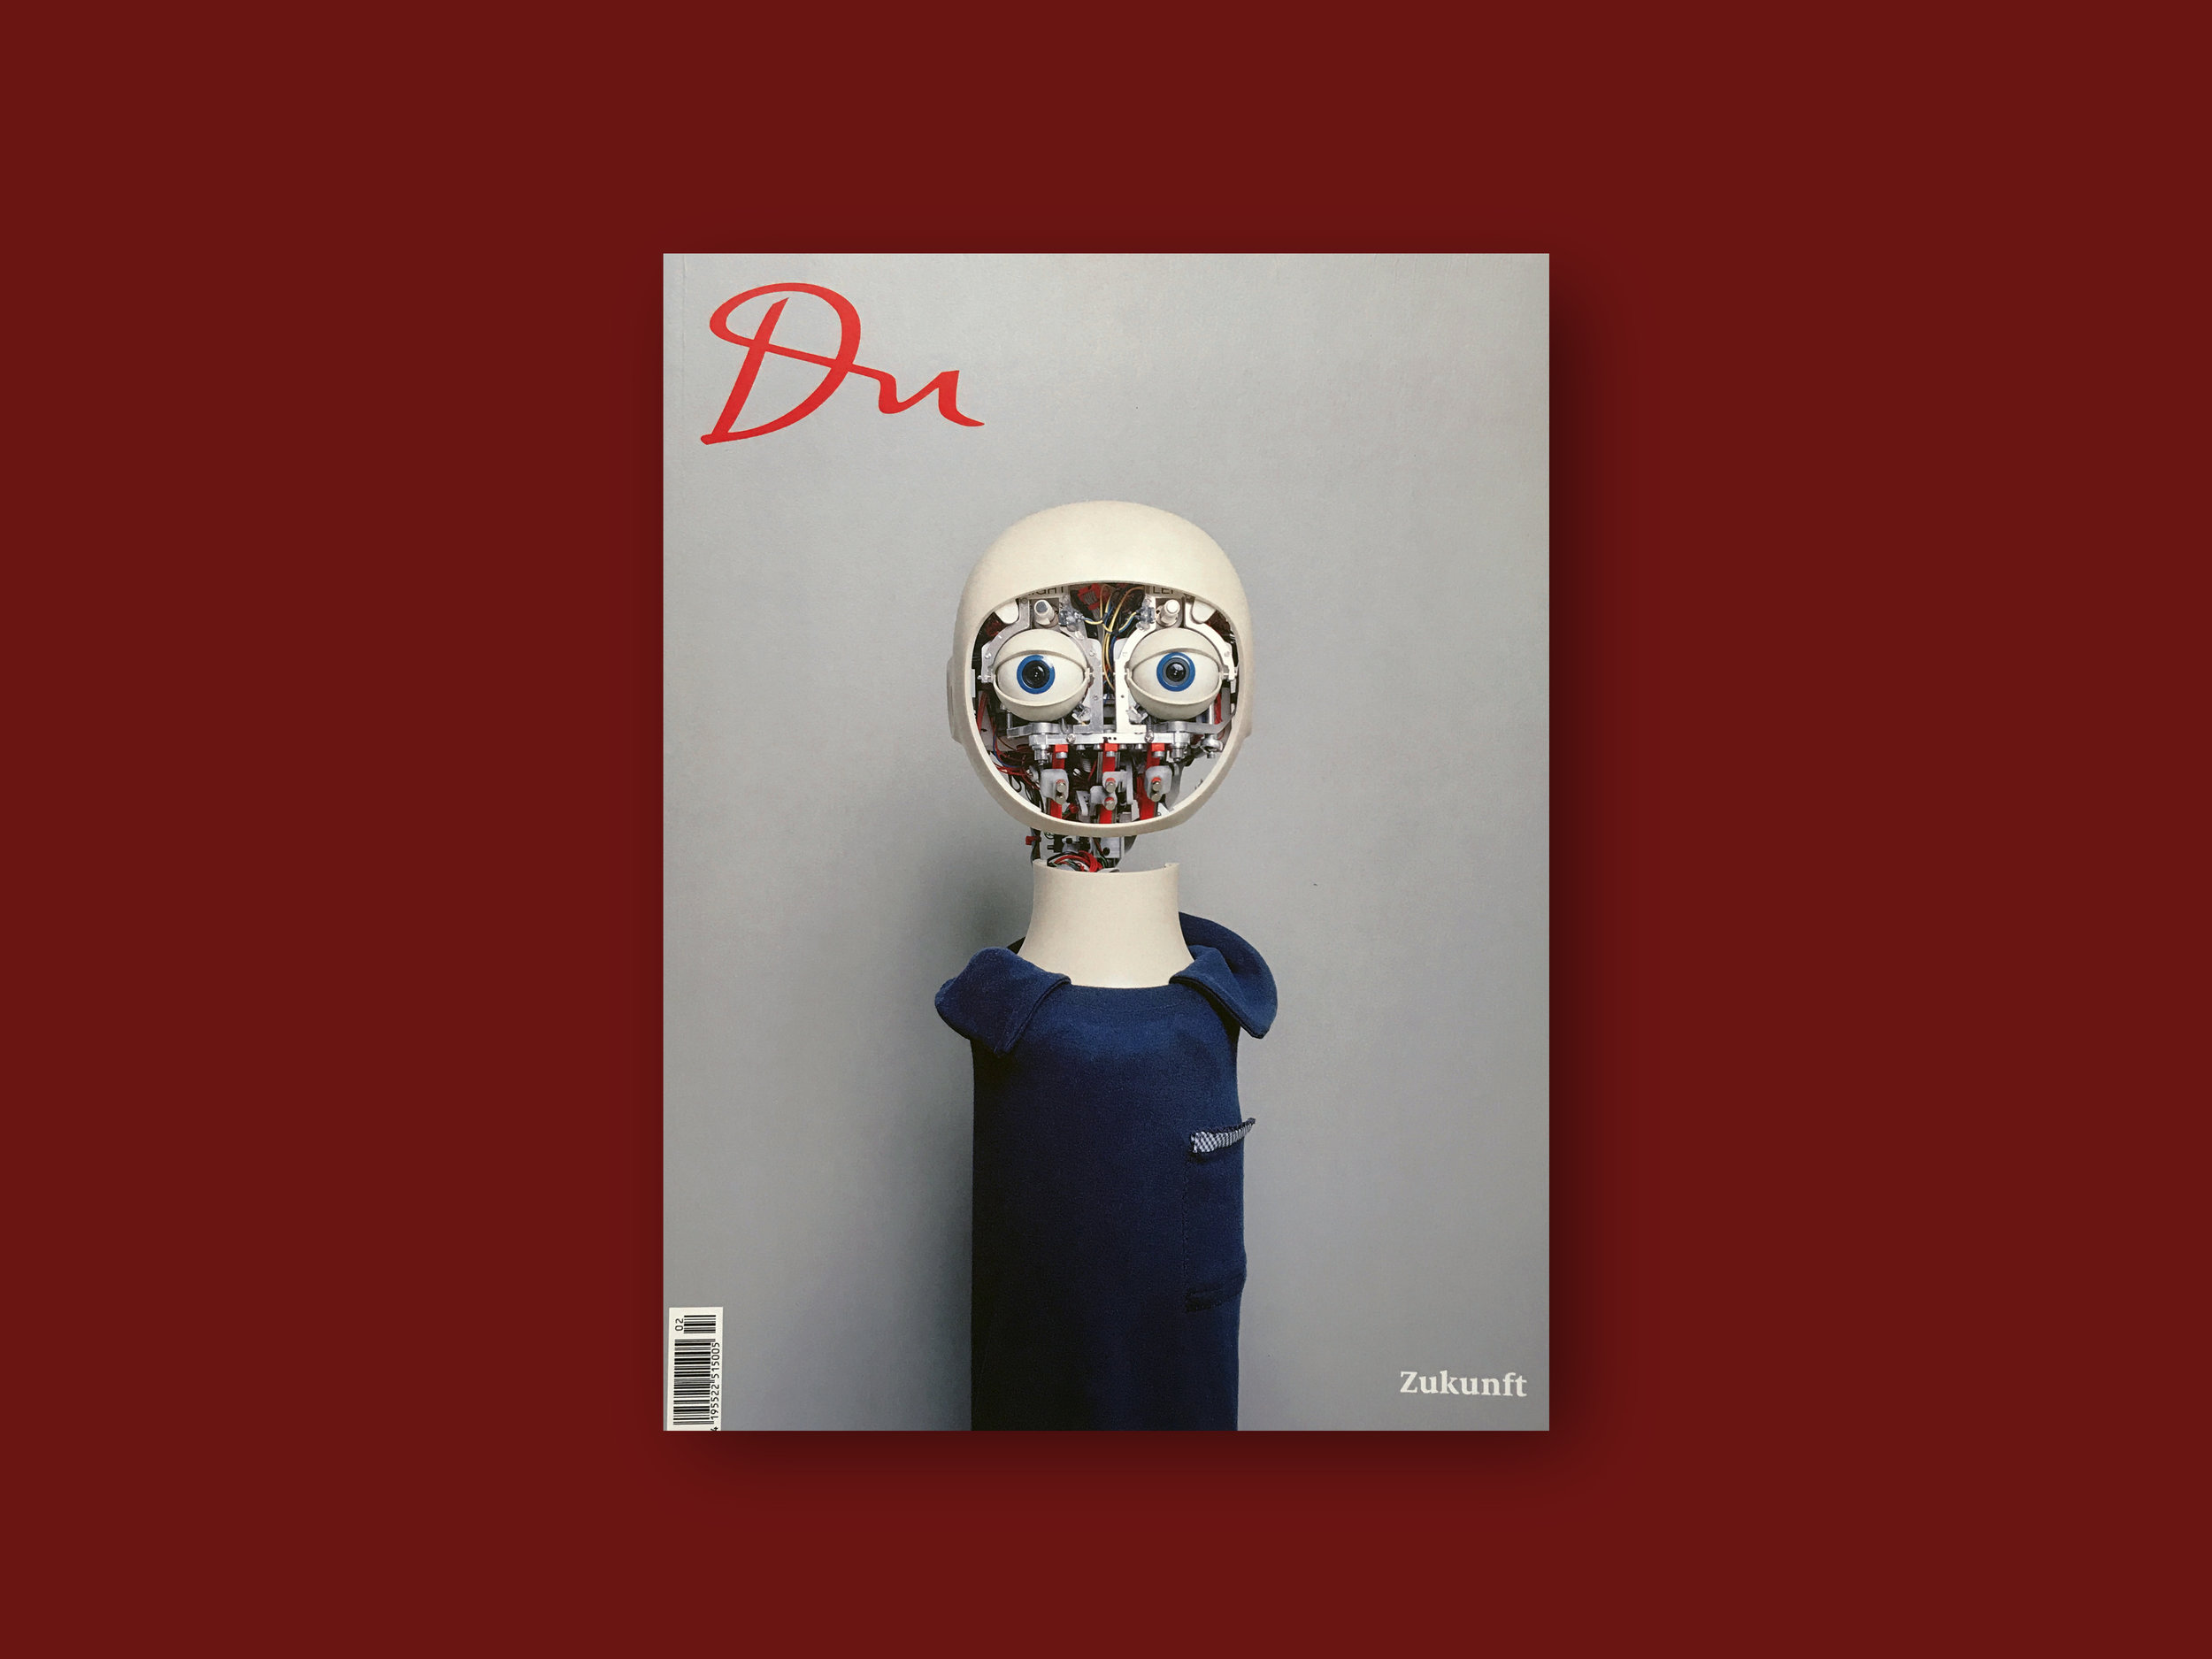   2016   DU Magazine  (CH) Issue 863, ' Zukunft'   